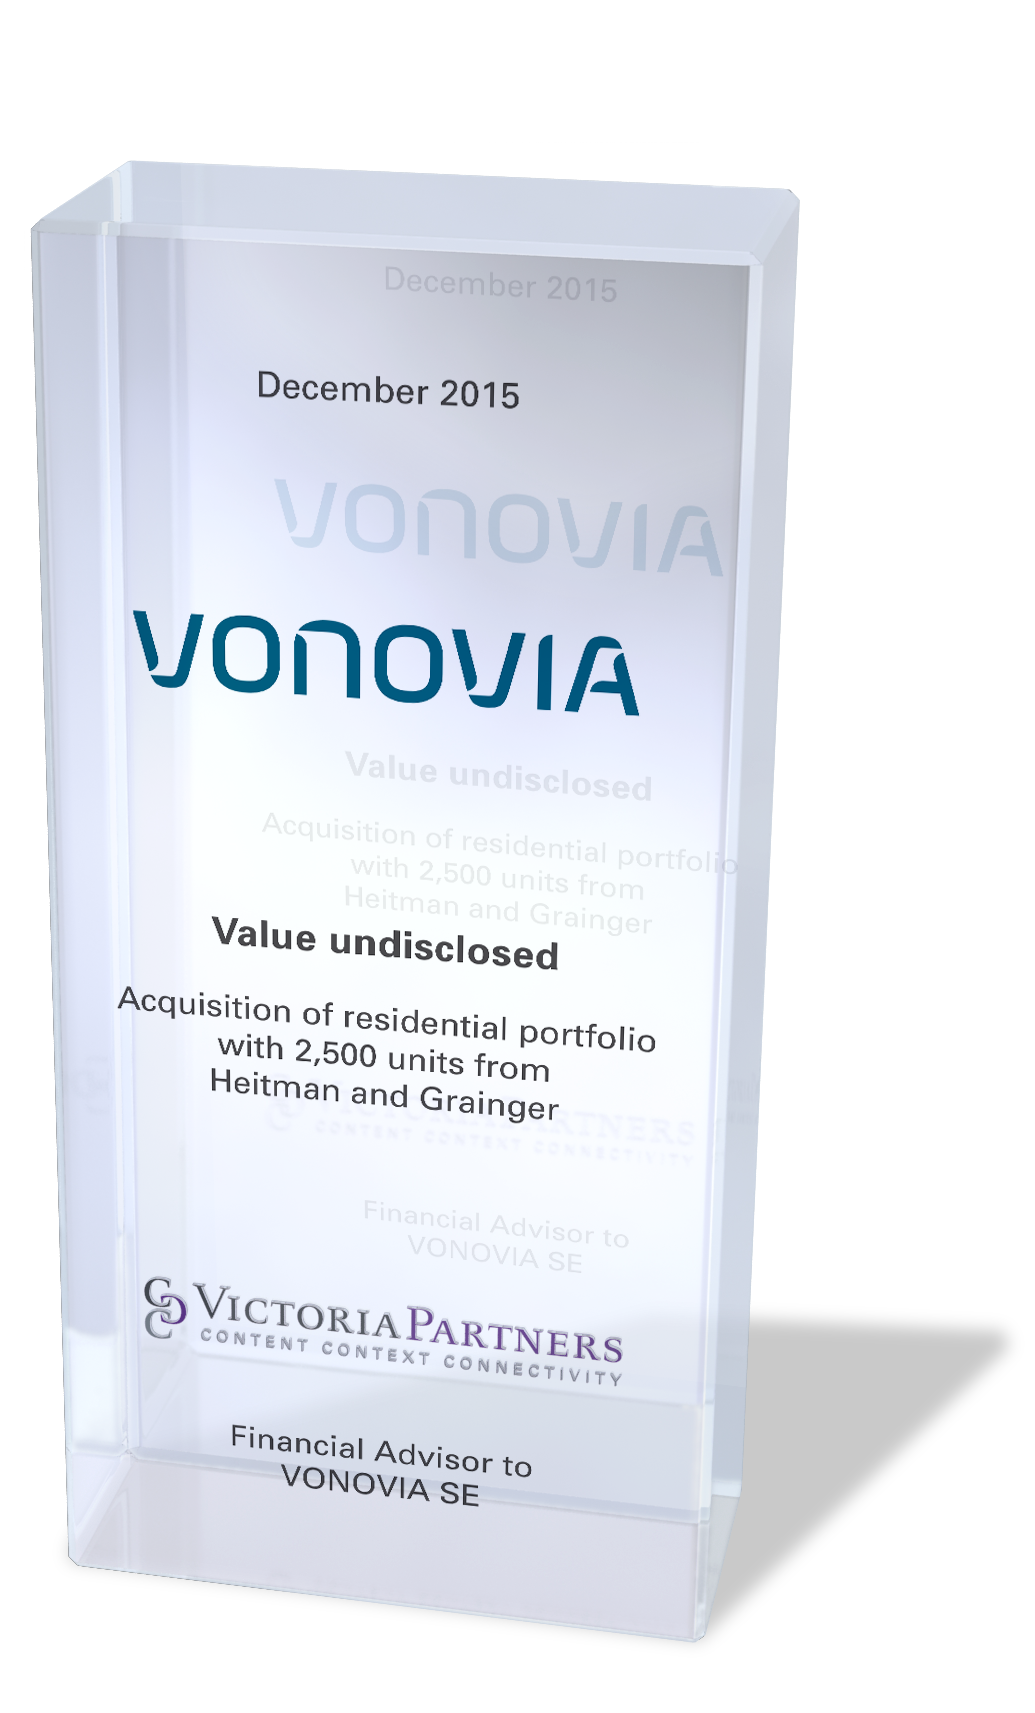 VICTORIAPARTNERS - Financial Advisor to VONOVIA SE - December 2015